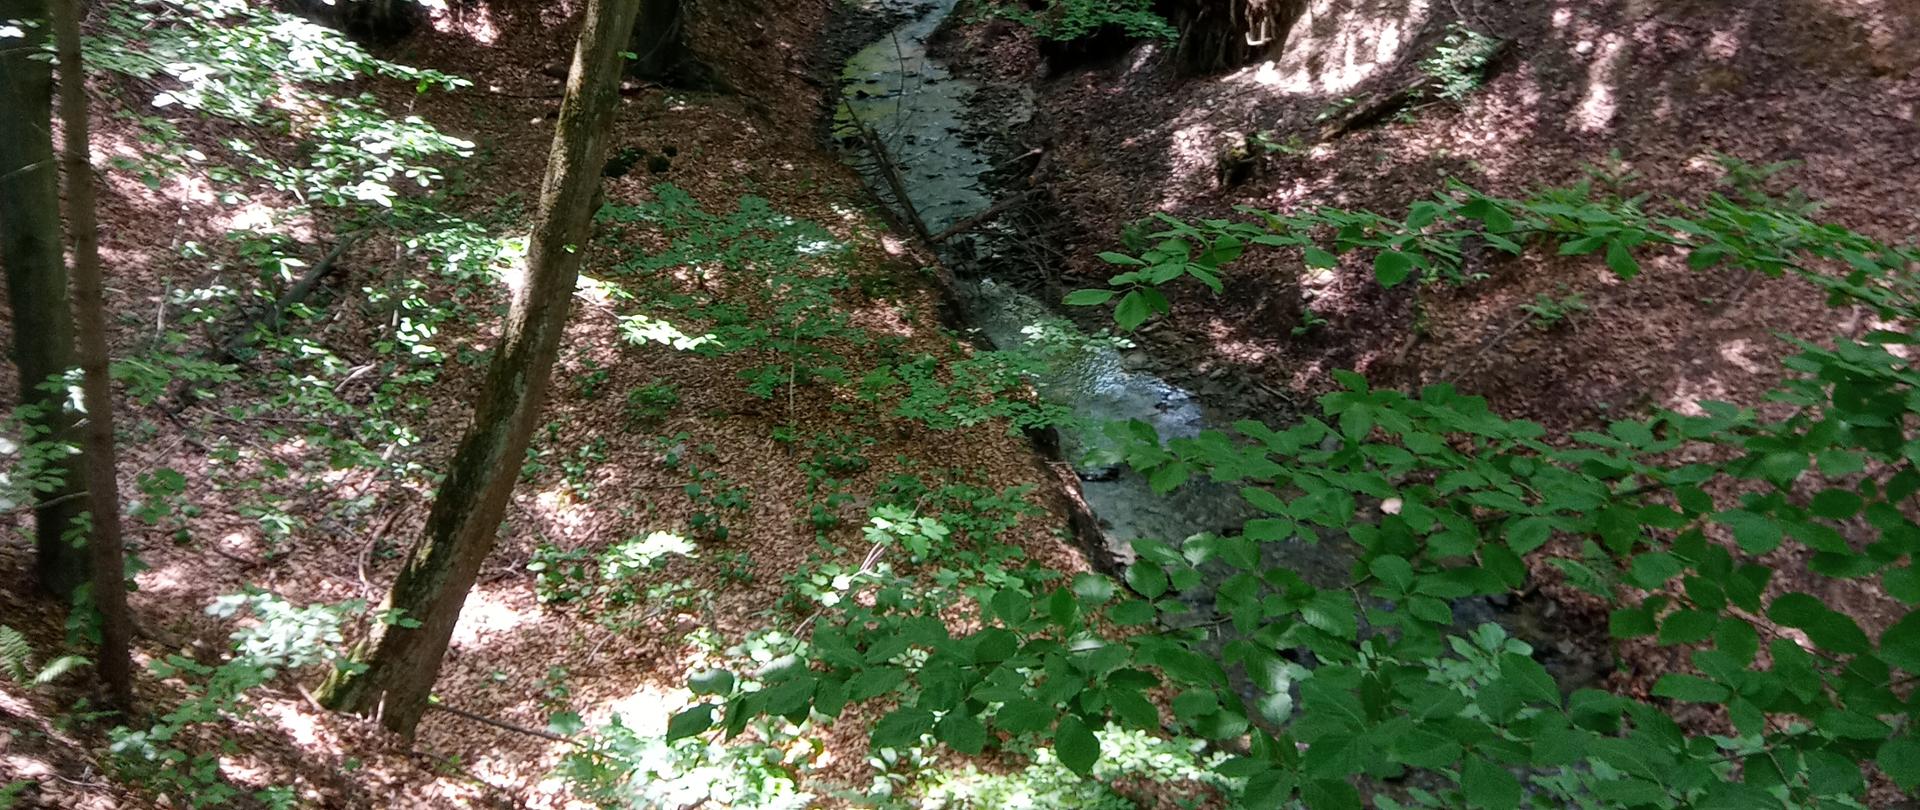 Zdjęcie przedstawia fragment lasu, środkiem płynie niewielki strumień